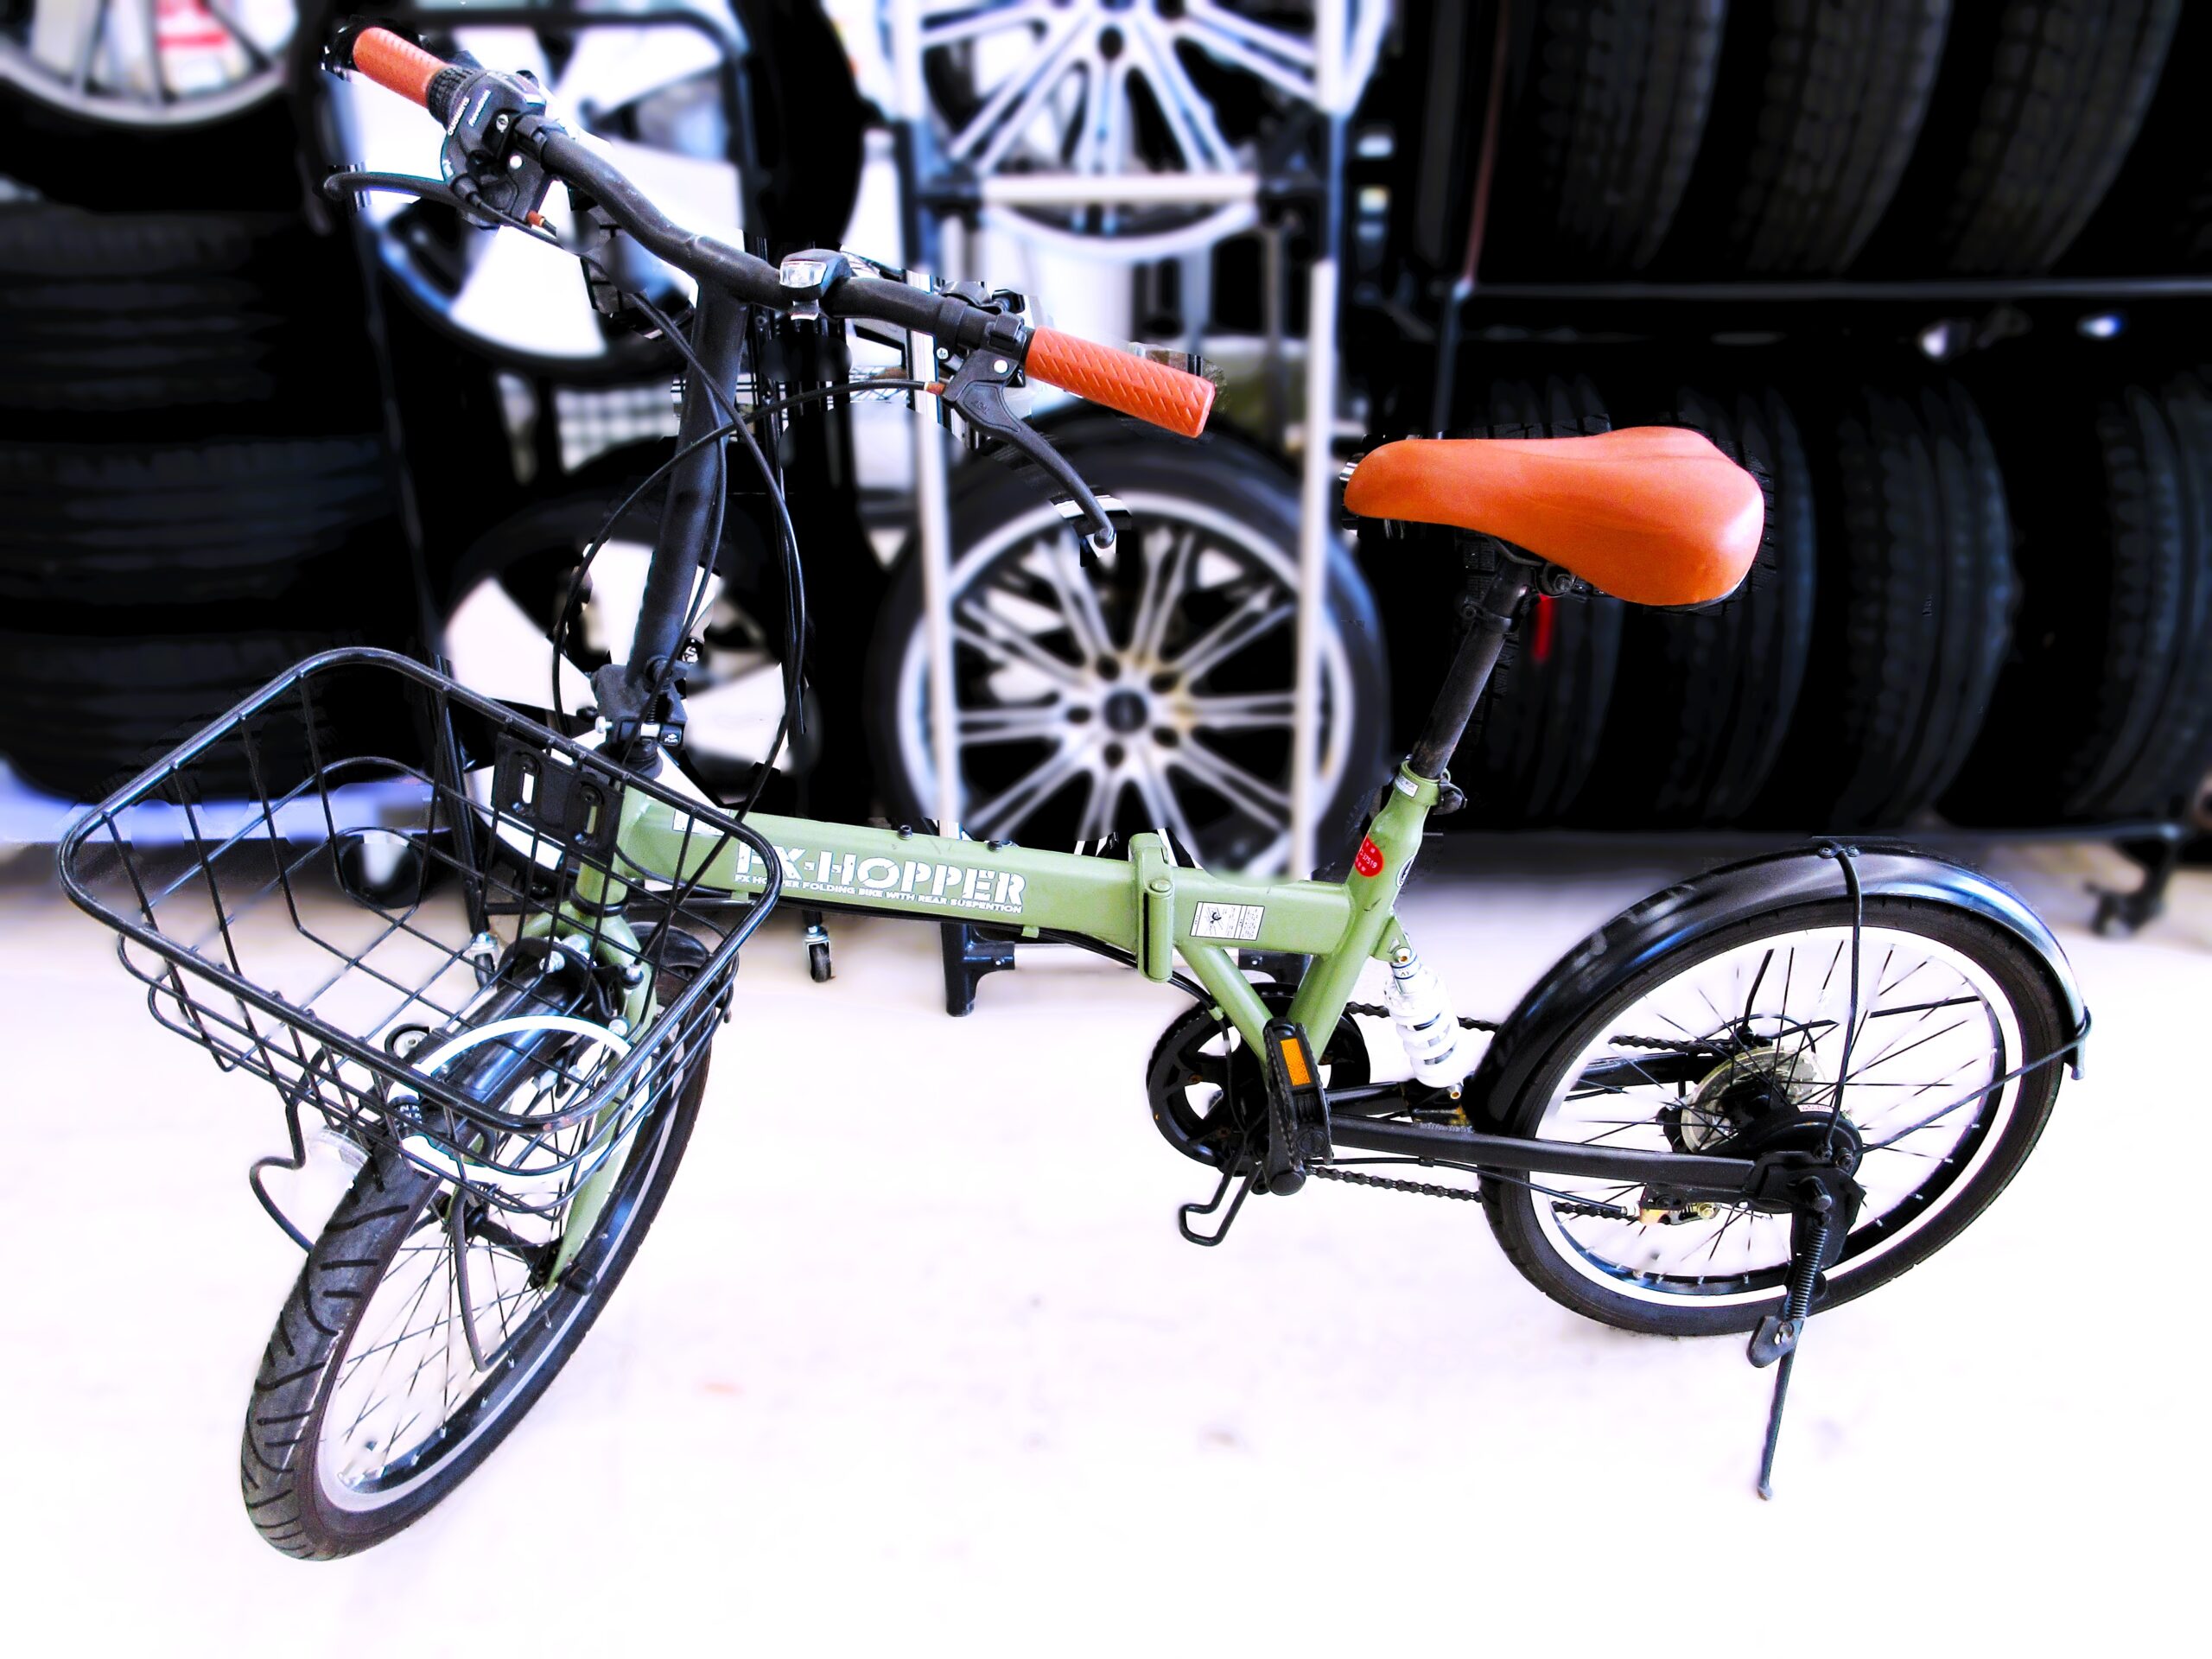 FX-HOPPER 折りたたみ自転車 - 自転車